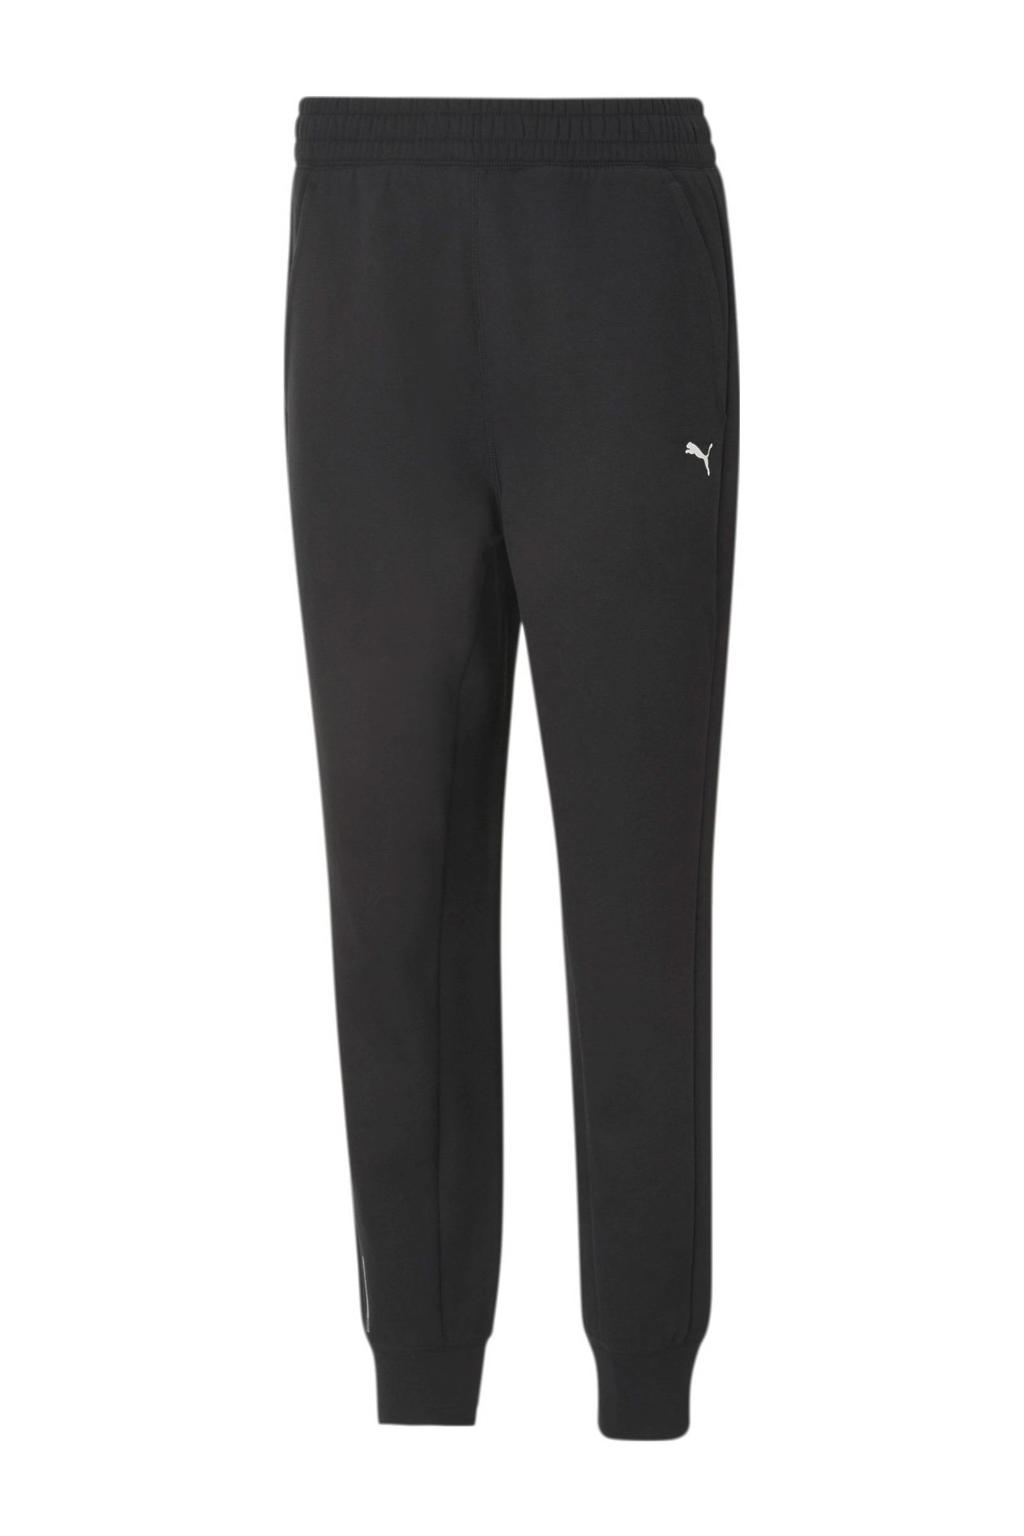 Zwarte dames Puma trainingsbroek van polyester met regular fit, regular waist, elastische tailleband met koord en logo dessin